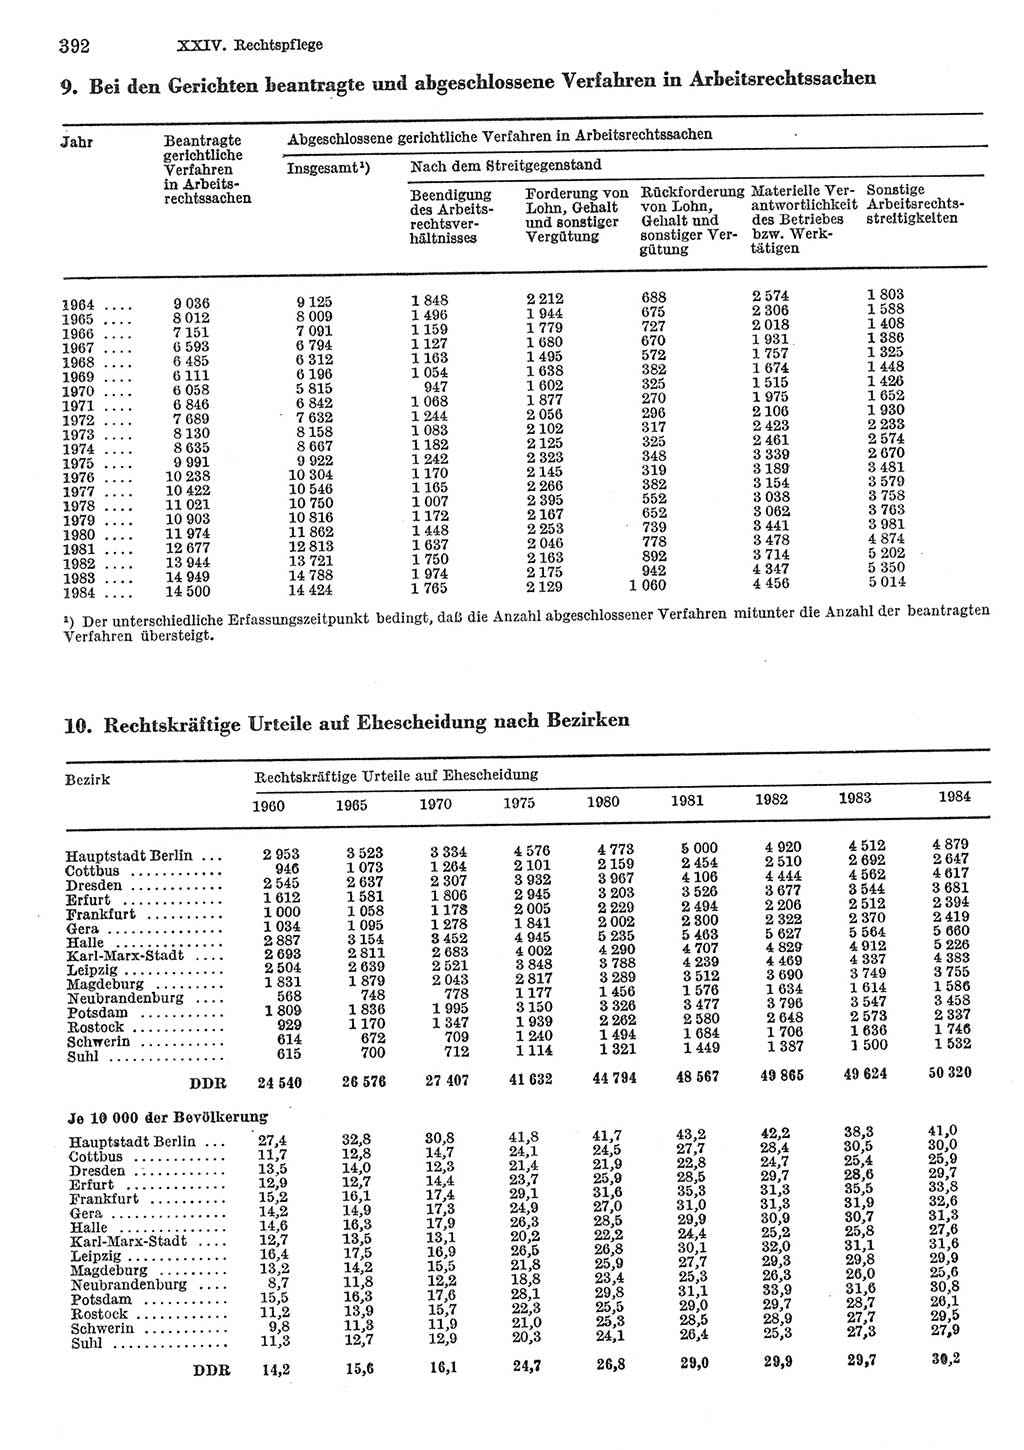 Statistisches Jahrbuch der Deutschen Demokratischen Republik (DDR) 1985, Seite 392 (Stat. Jb. DDR 1985, S. 392)